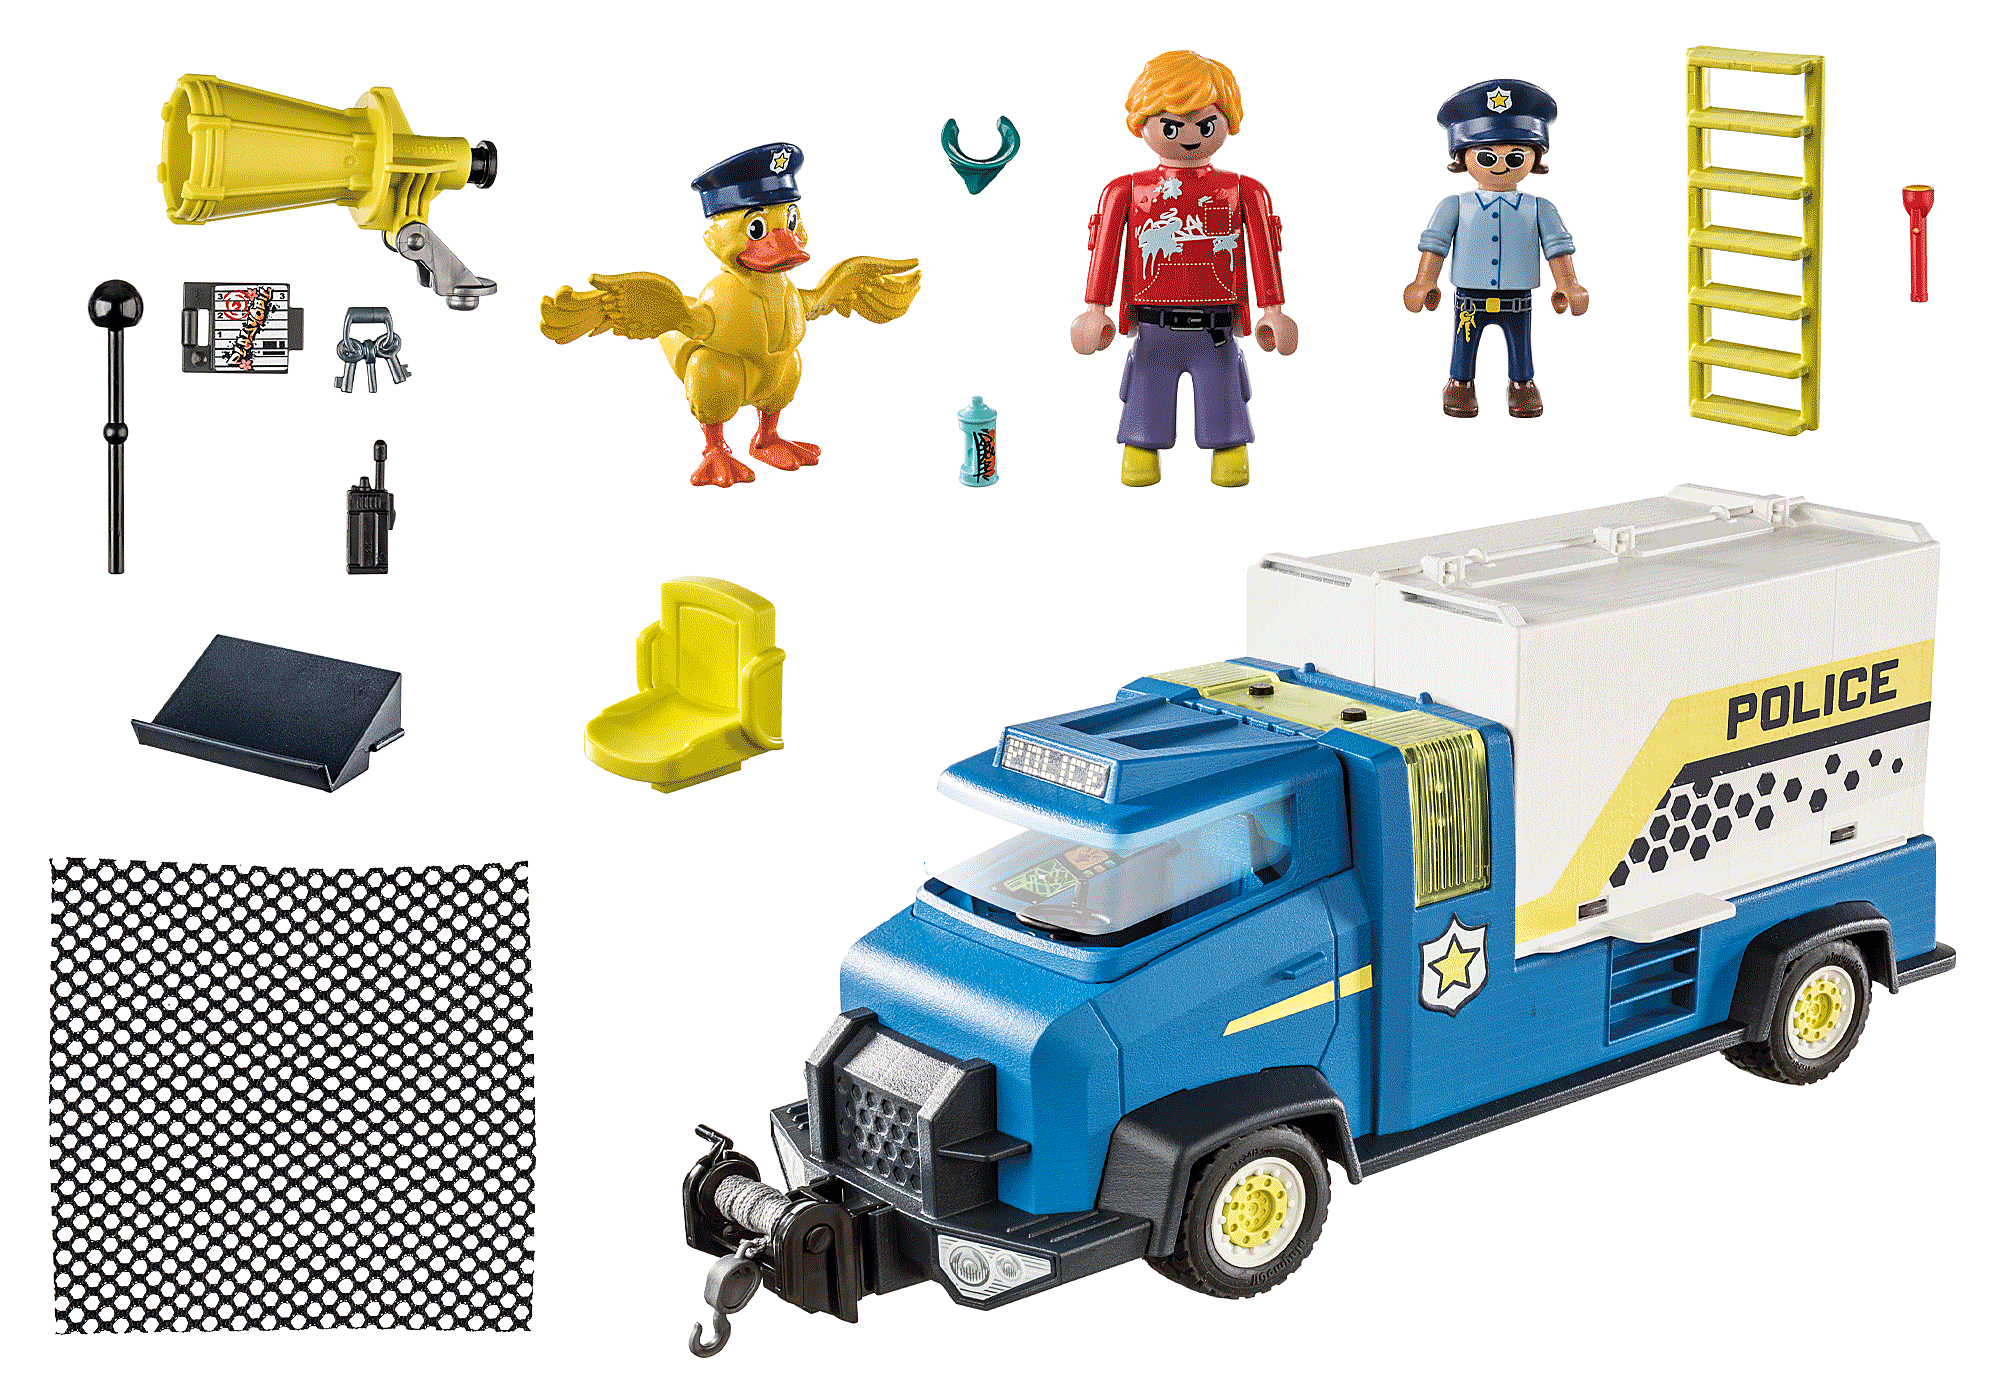 Fourgon de Police playmobil - Playmobil